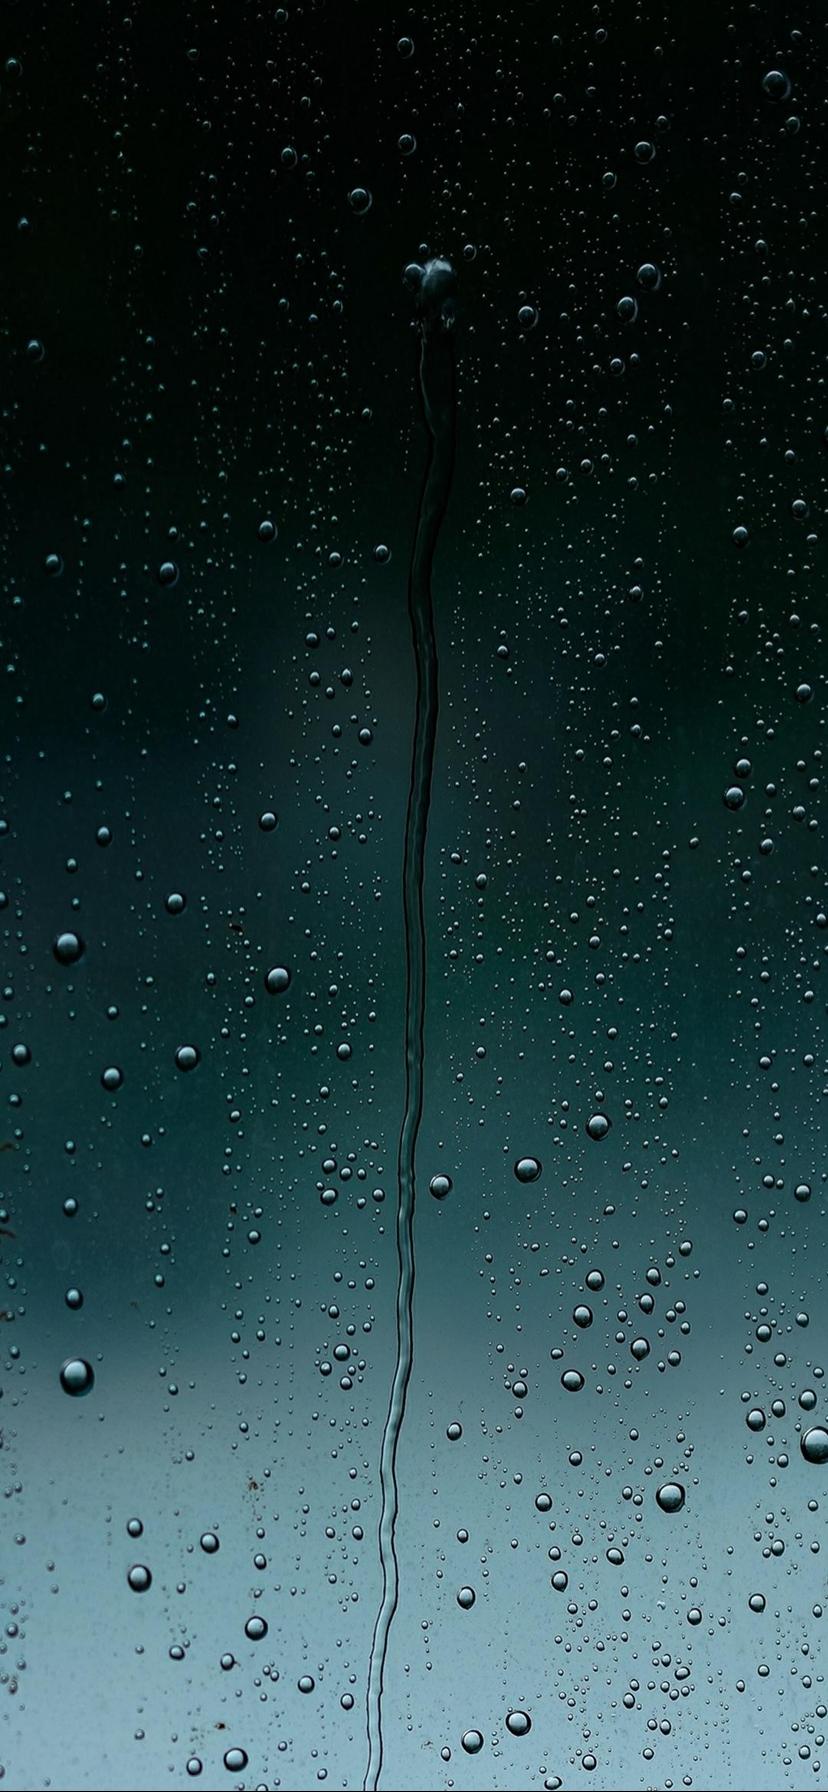 窓を叩いて雨が 私はゃお市のsuミリアンペアホ画面の壁紙画像 Hdの携帯電話の壁紙 風景を叫ぶロック 壁紙